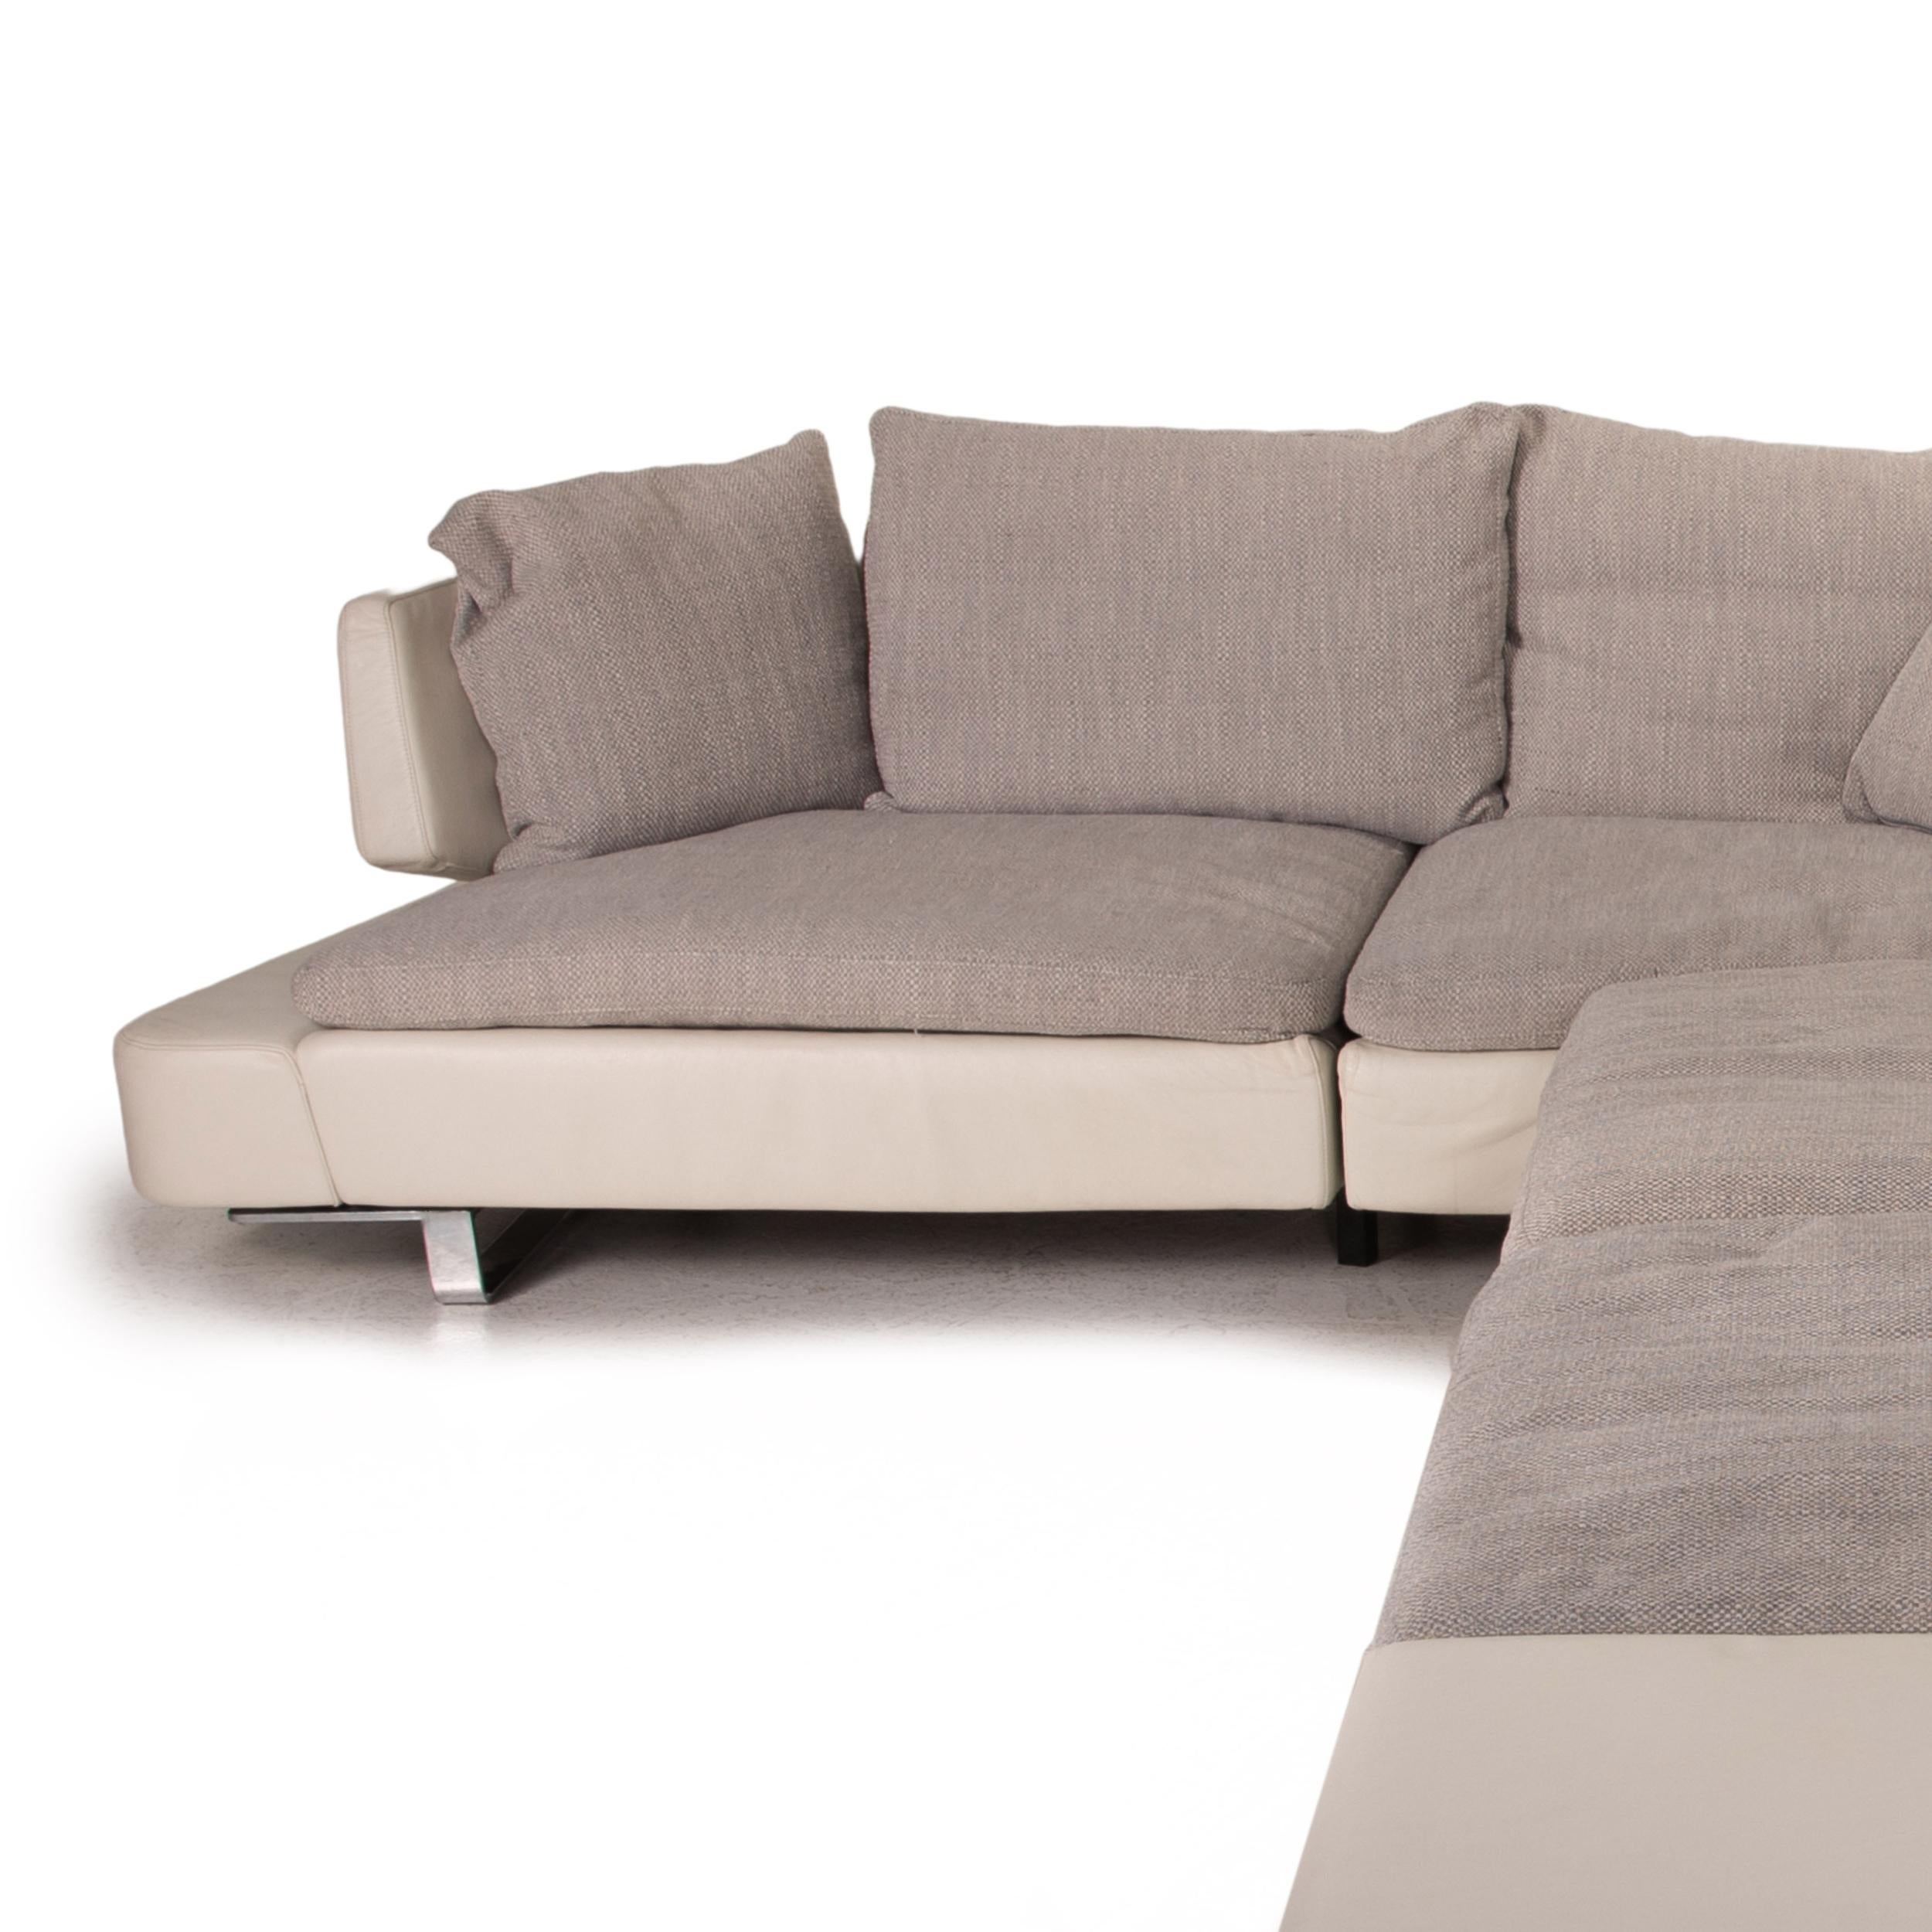 Contemporary Natuzzi Opus Leather Fabric Corner Sofa Gray Cream Sofa Couch For Sale